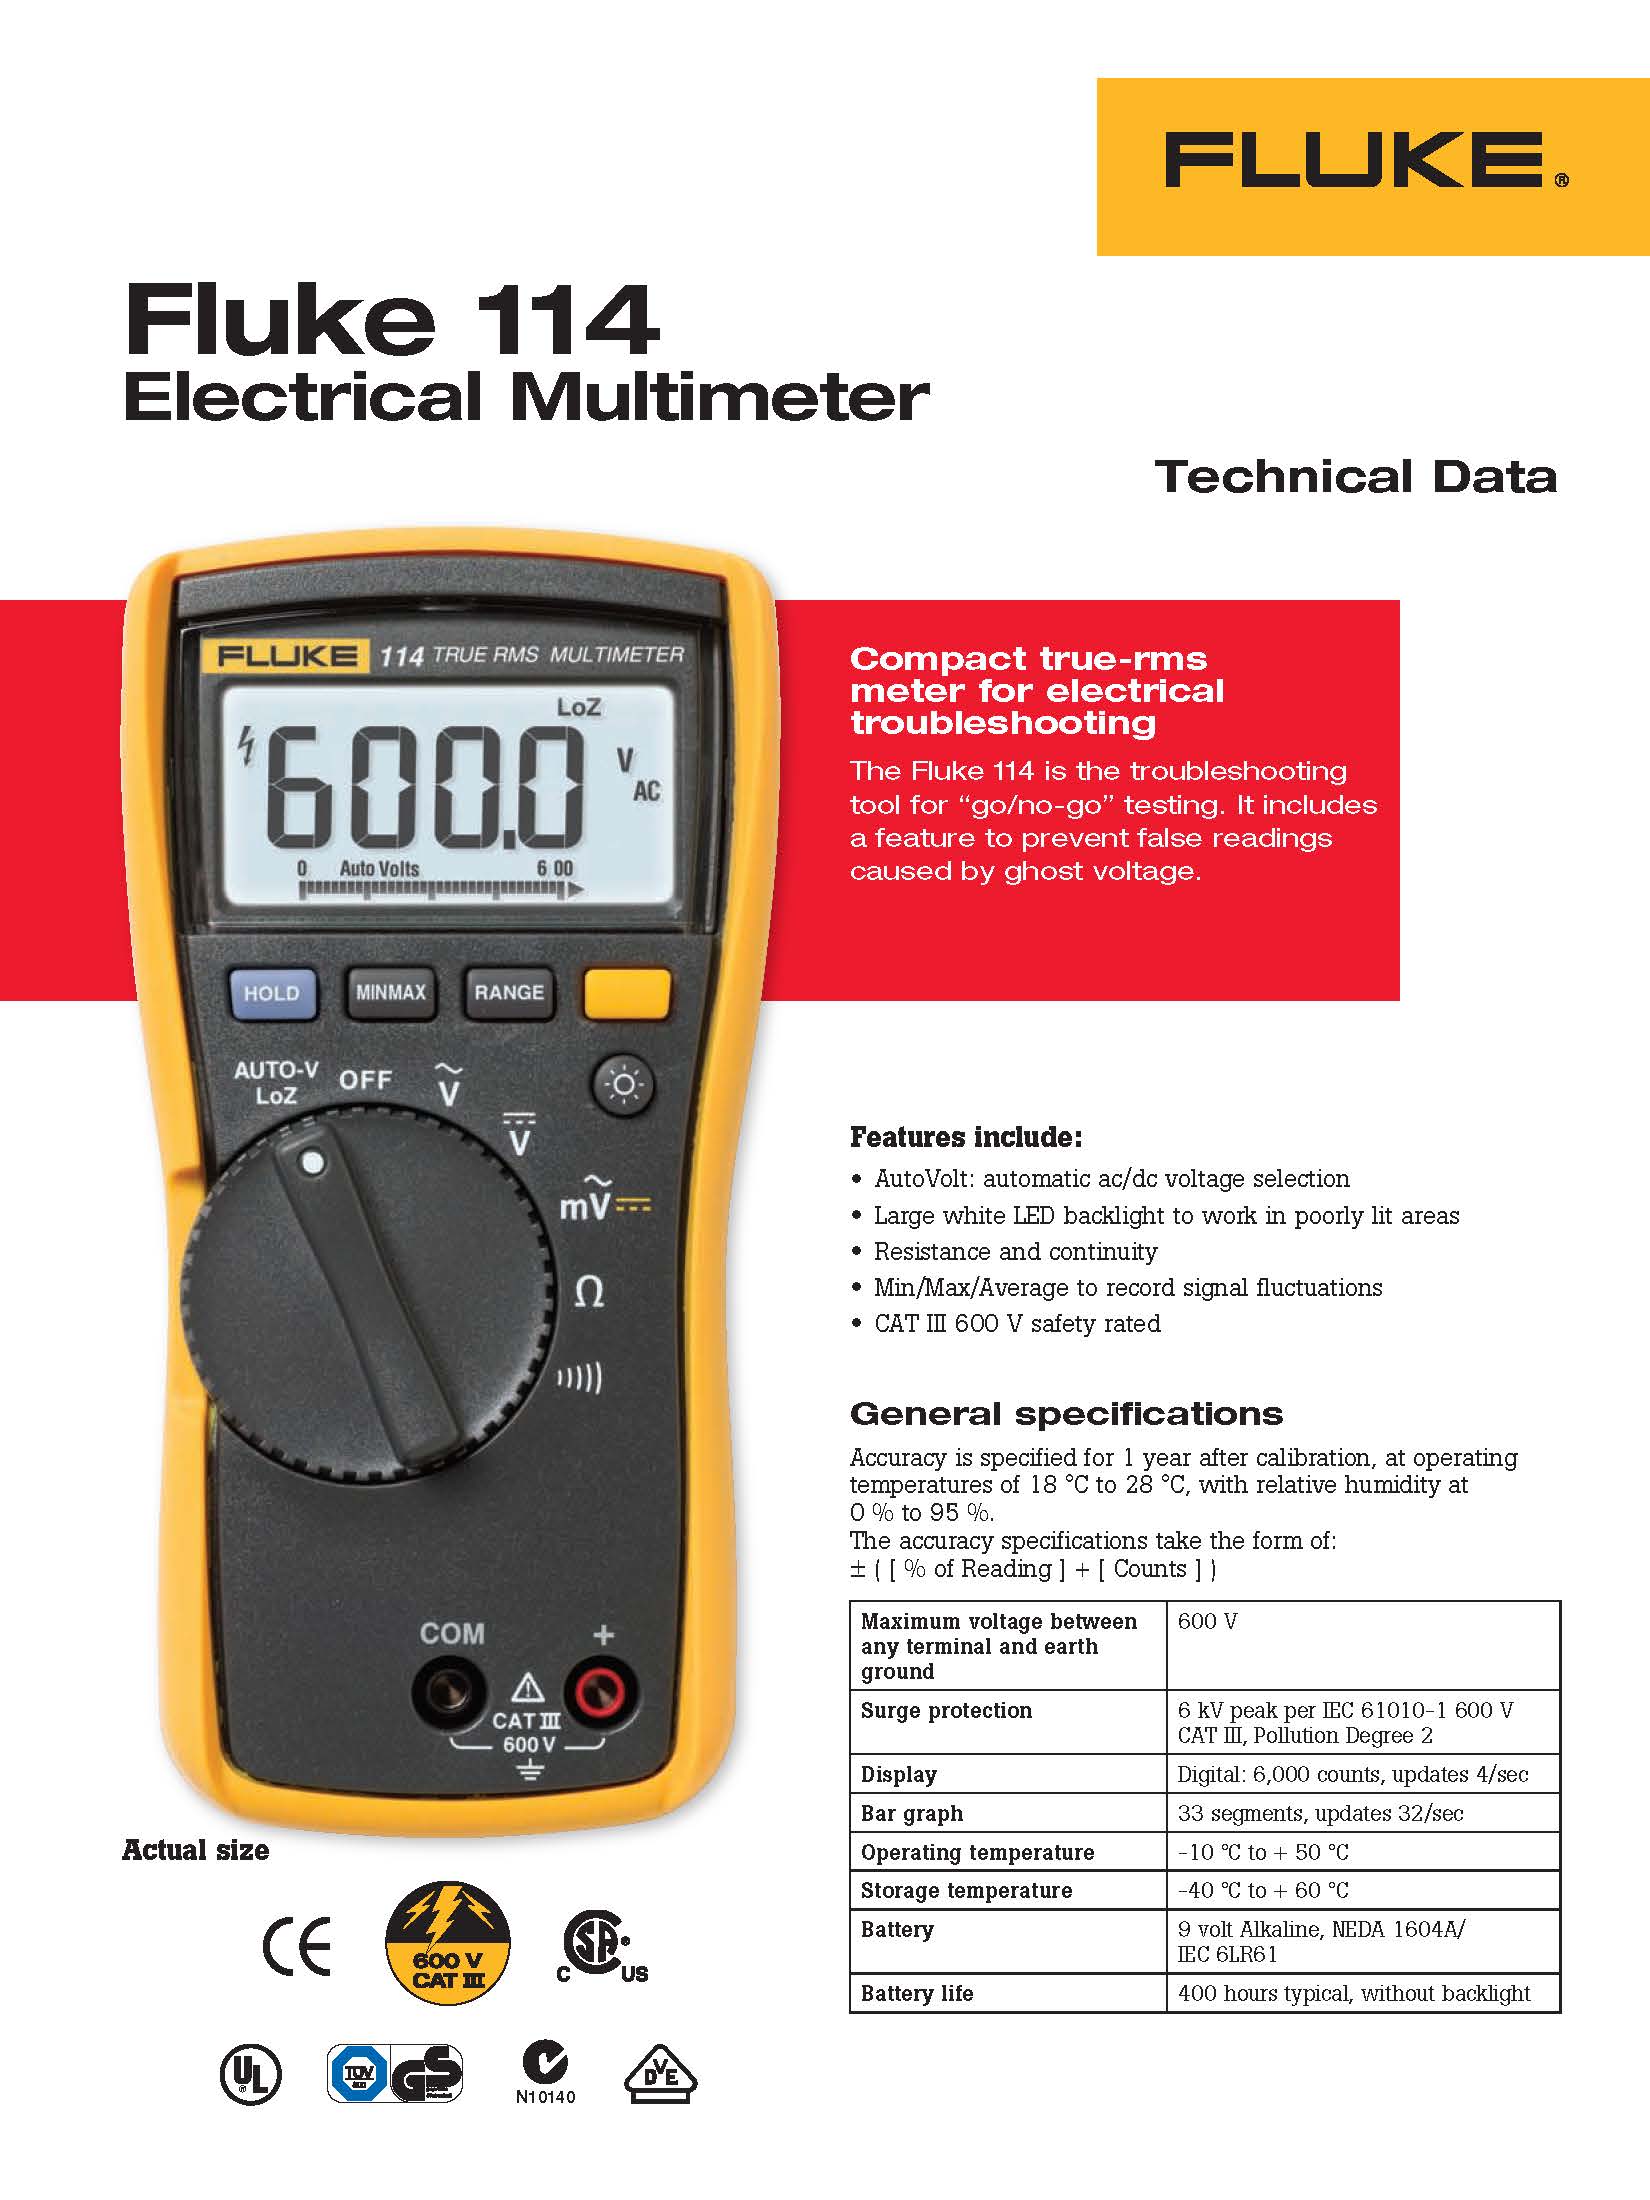 Fluke 114: ดิจิตอลมัลติมิเตอร์ สำหรับงานไฟฟ้าพื้นฐาน